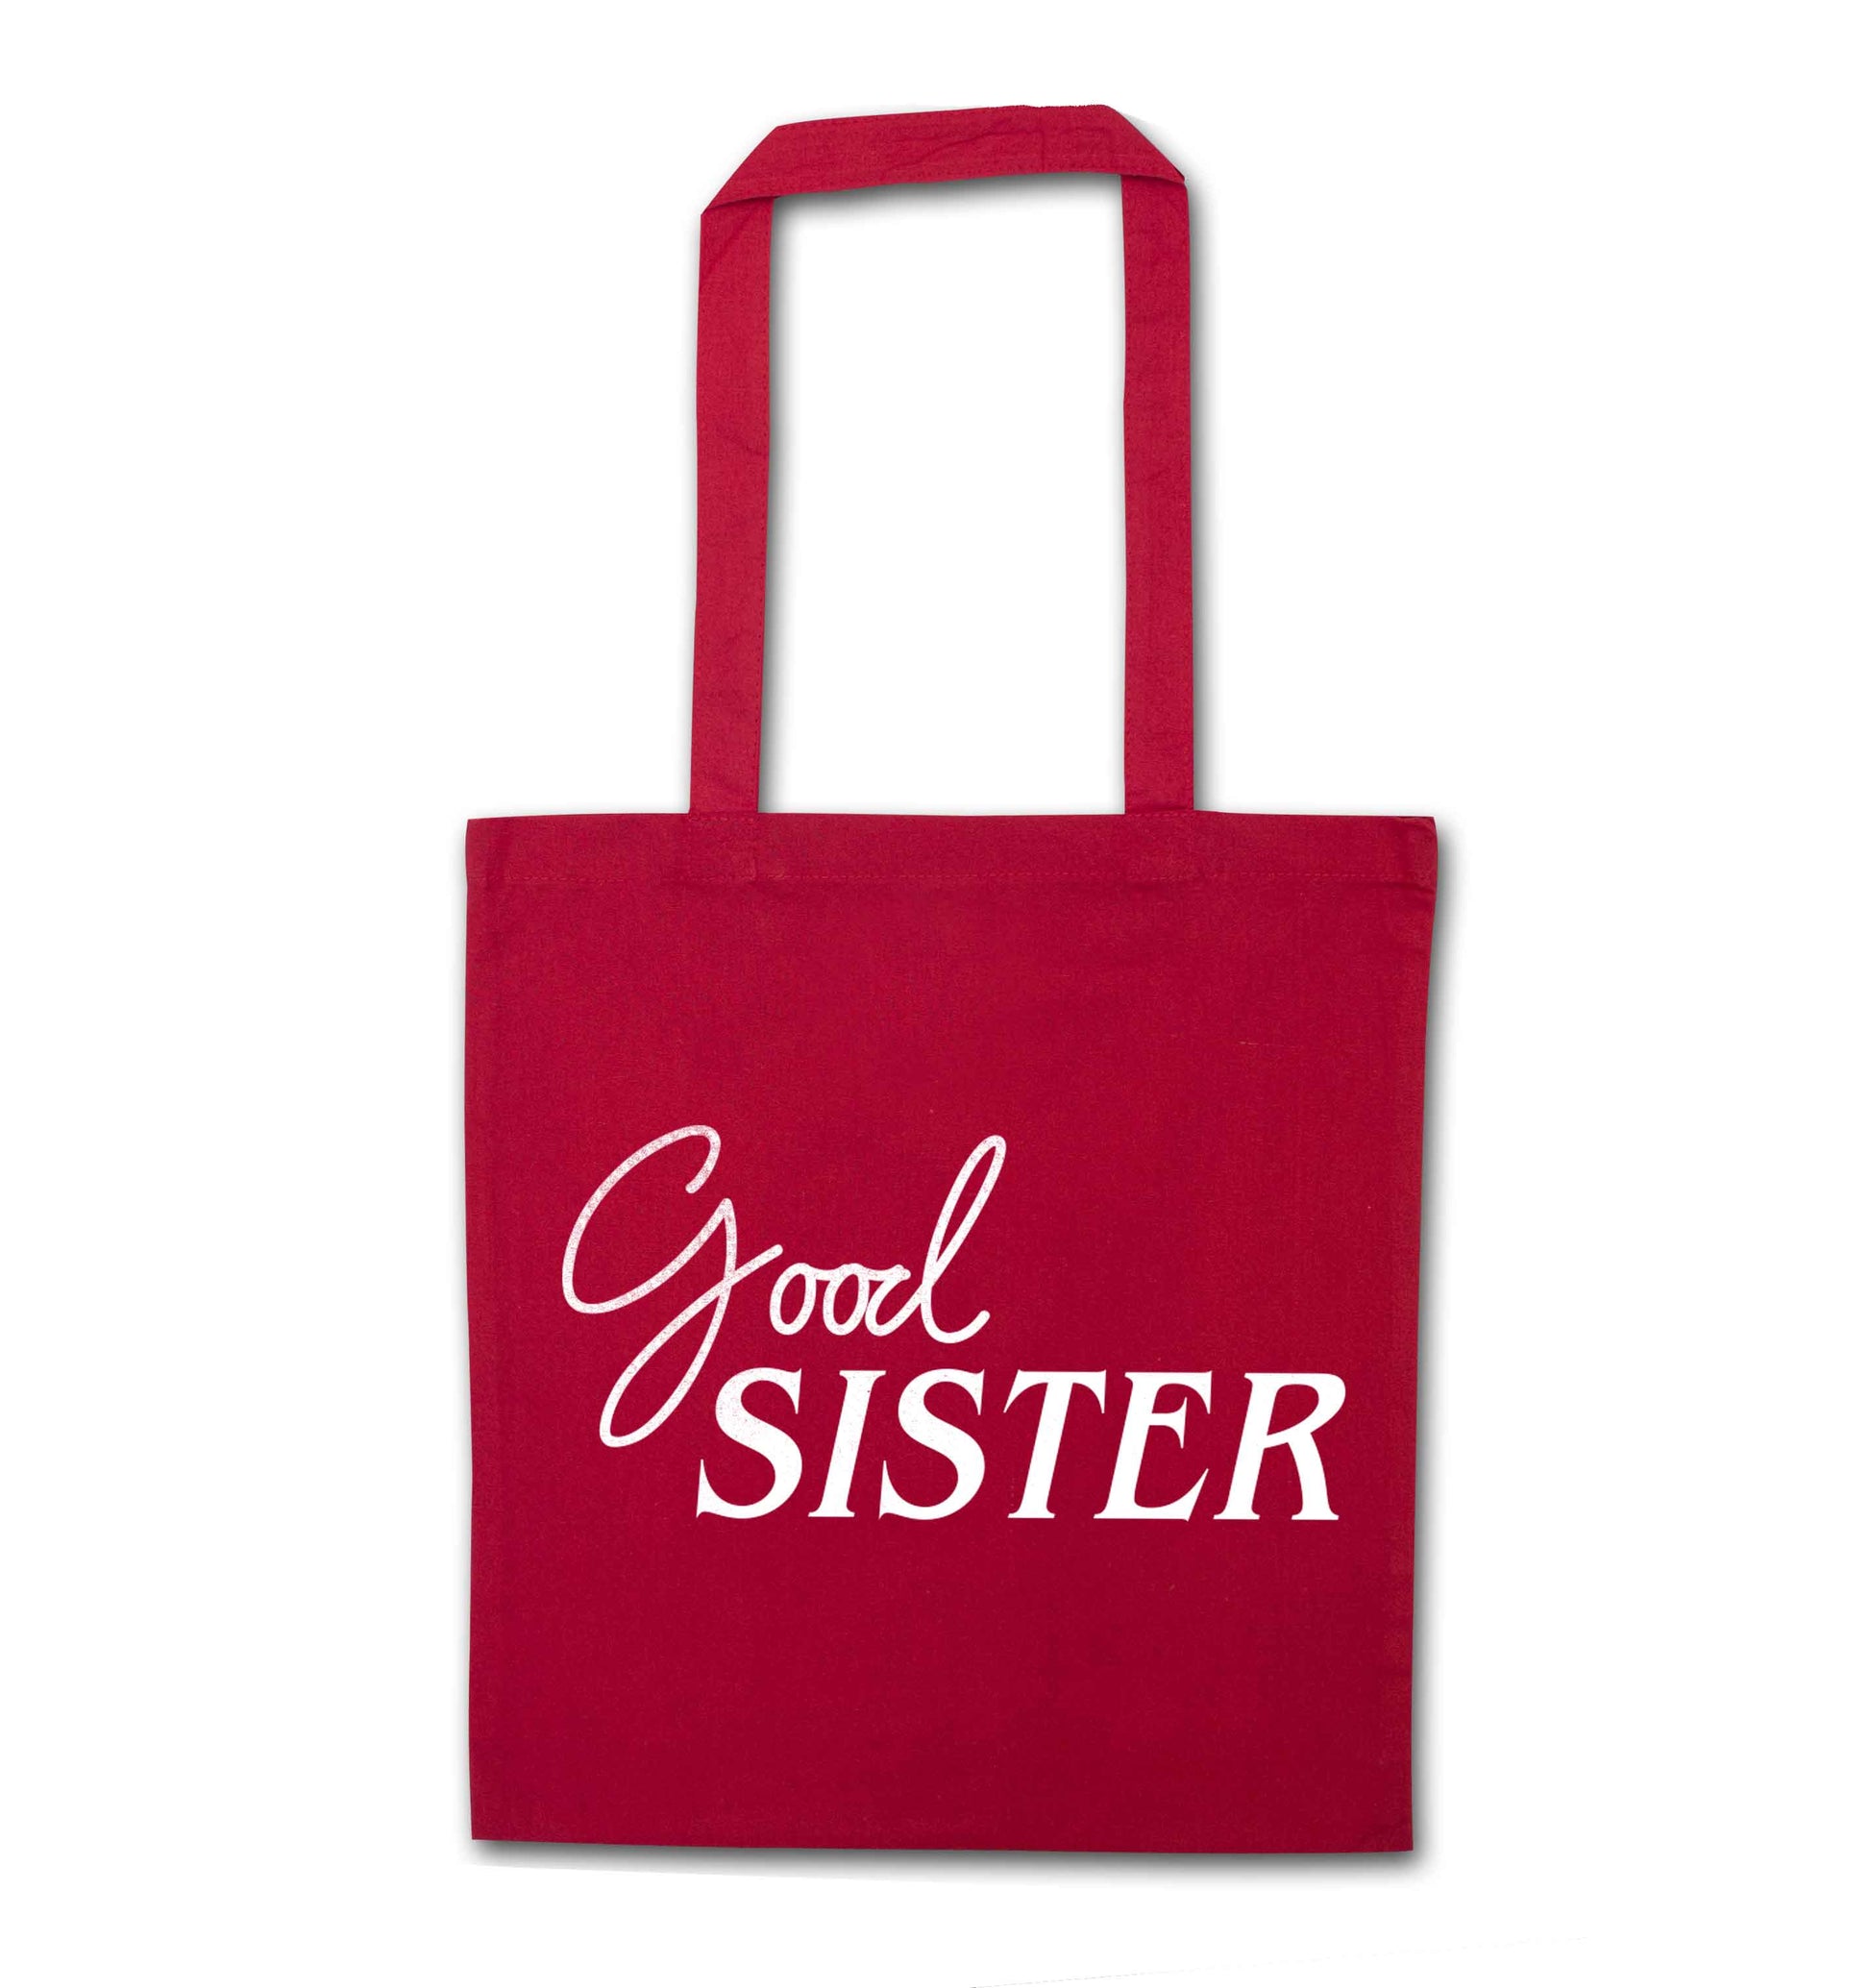 Good sister red tote bag